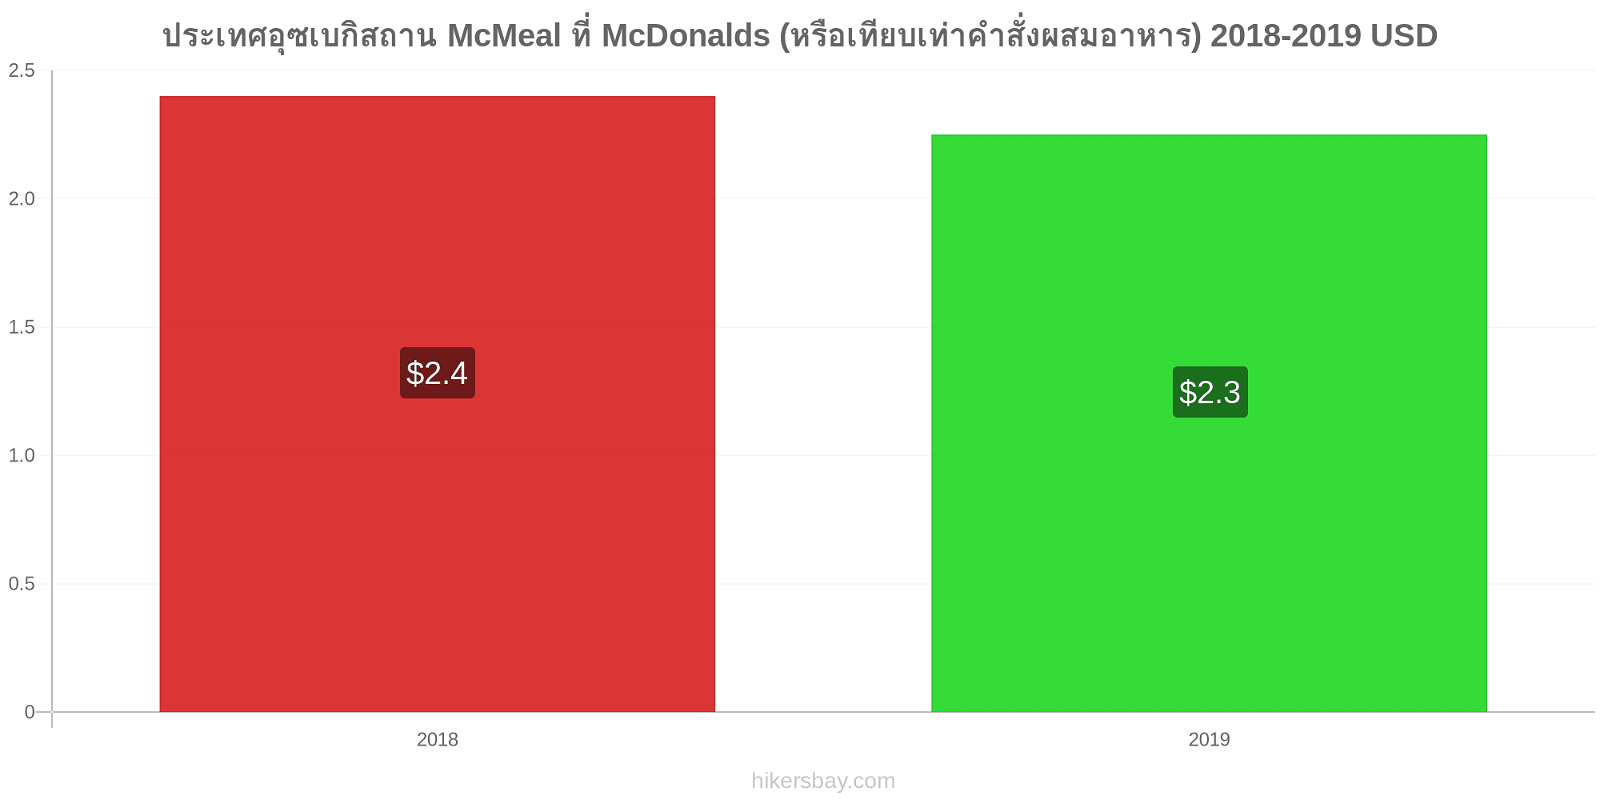 ประเทศอุซเบกิสถาน การเปลี่ยนแปลงราคา McMeal ที่ McDonalds (หรือเทียบเท่าคำสั่งผสมอาหาร) hikersbay.com